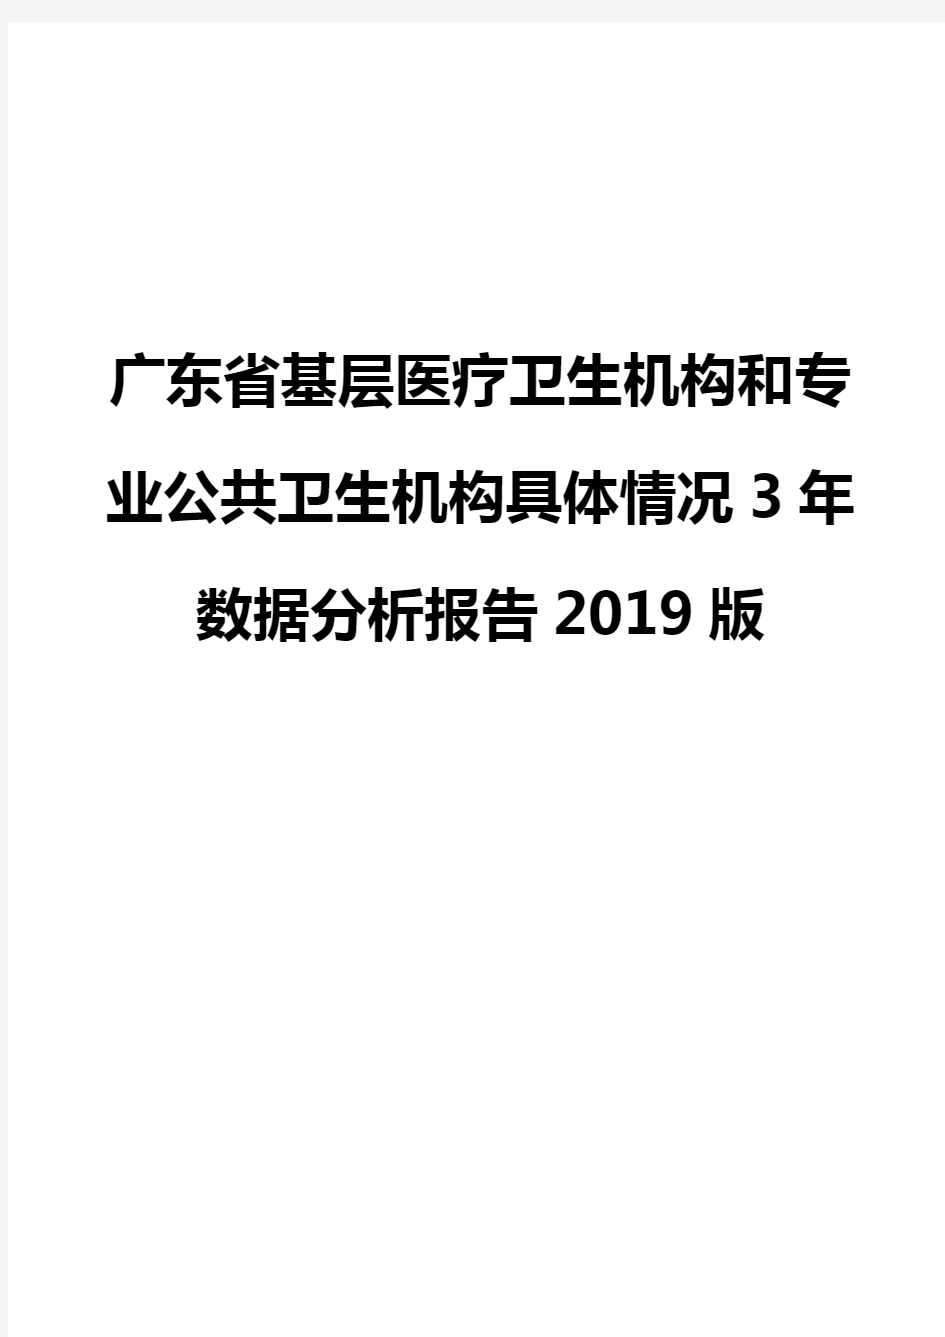 广东省基层医疗卫生机构和专业公共卫生机构具体情况3年数据分析报告2019版